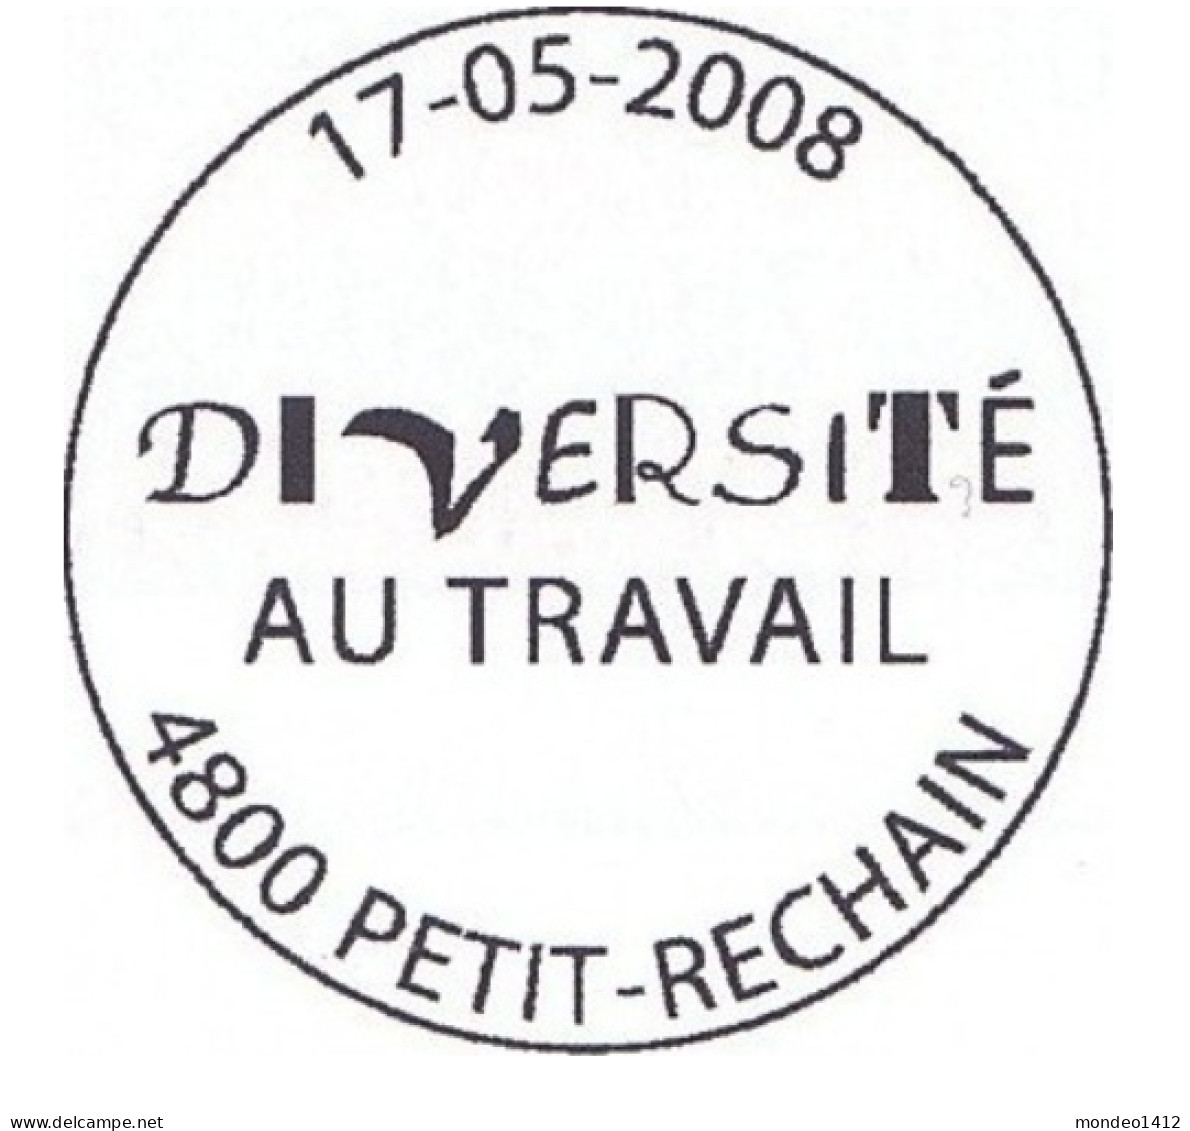 België OBP 3783 - Diversiteit - Used Stamps